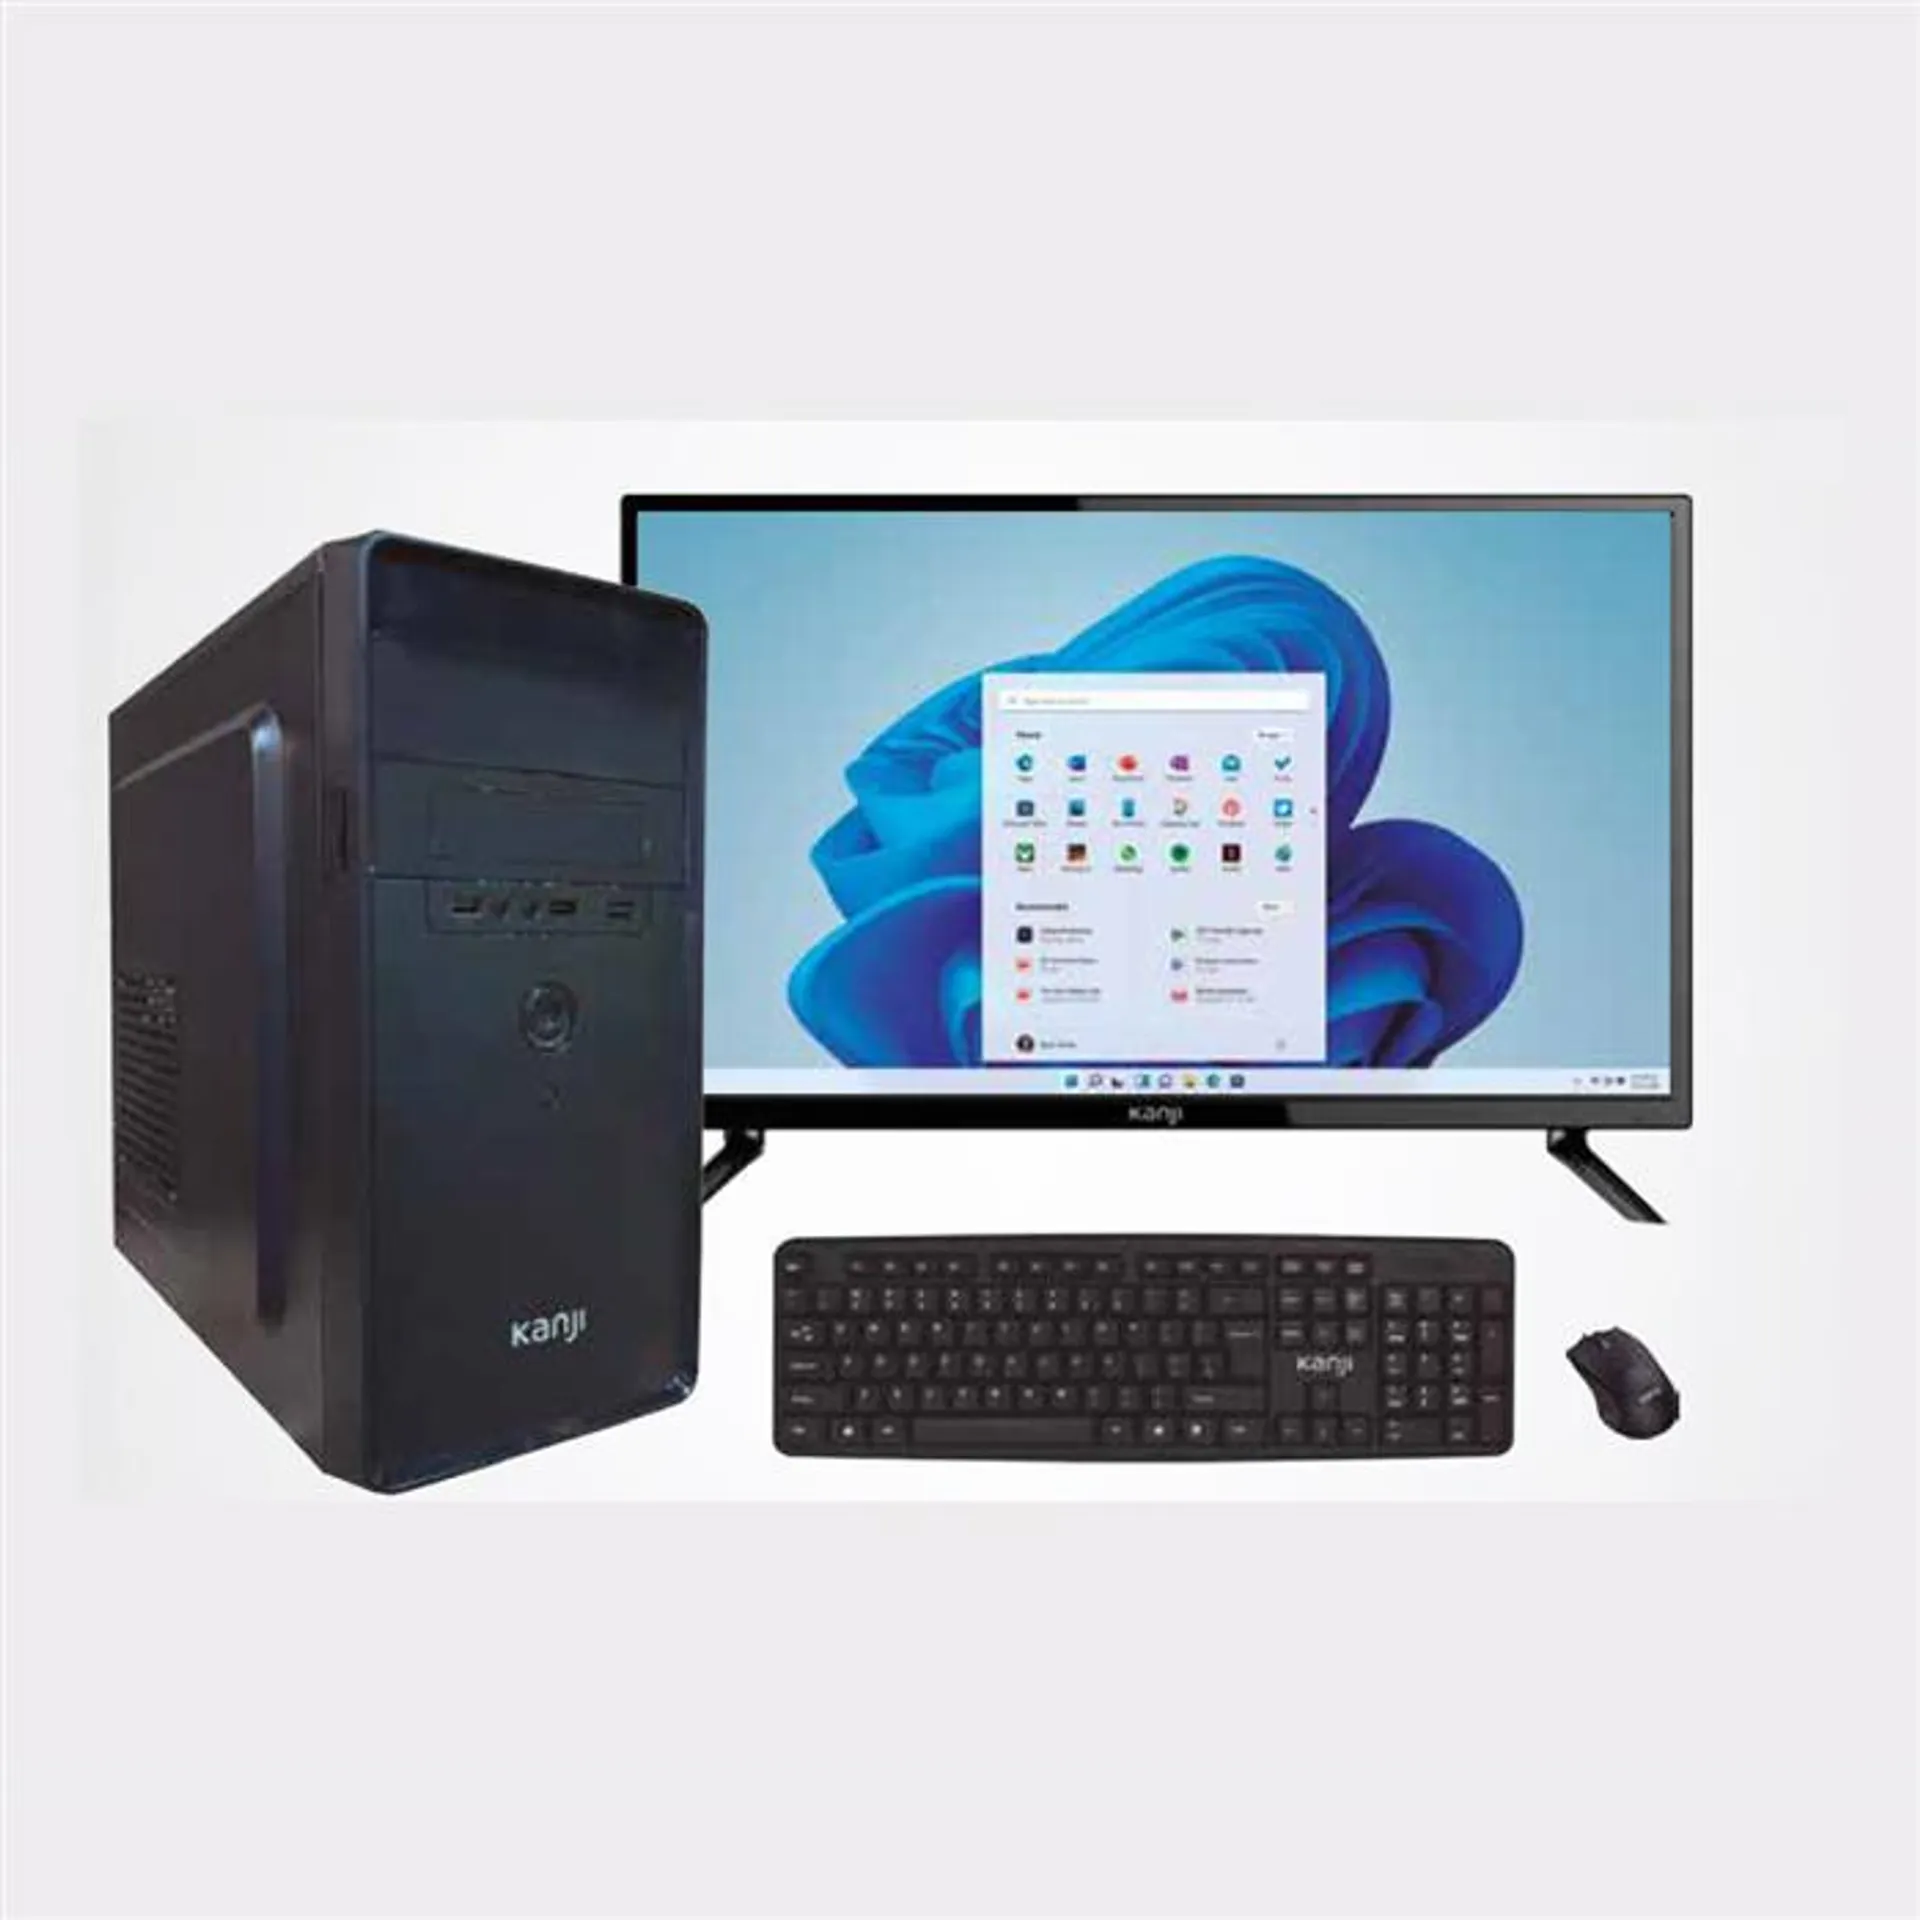 PC ARMADA COMPLETA KANJI i5-10400 8GB HDD 1TERA WINDOWS 11 PRO MONITOR TV 24" KJ-24MT005